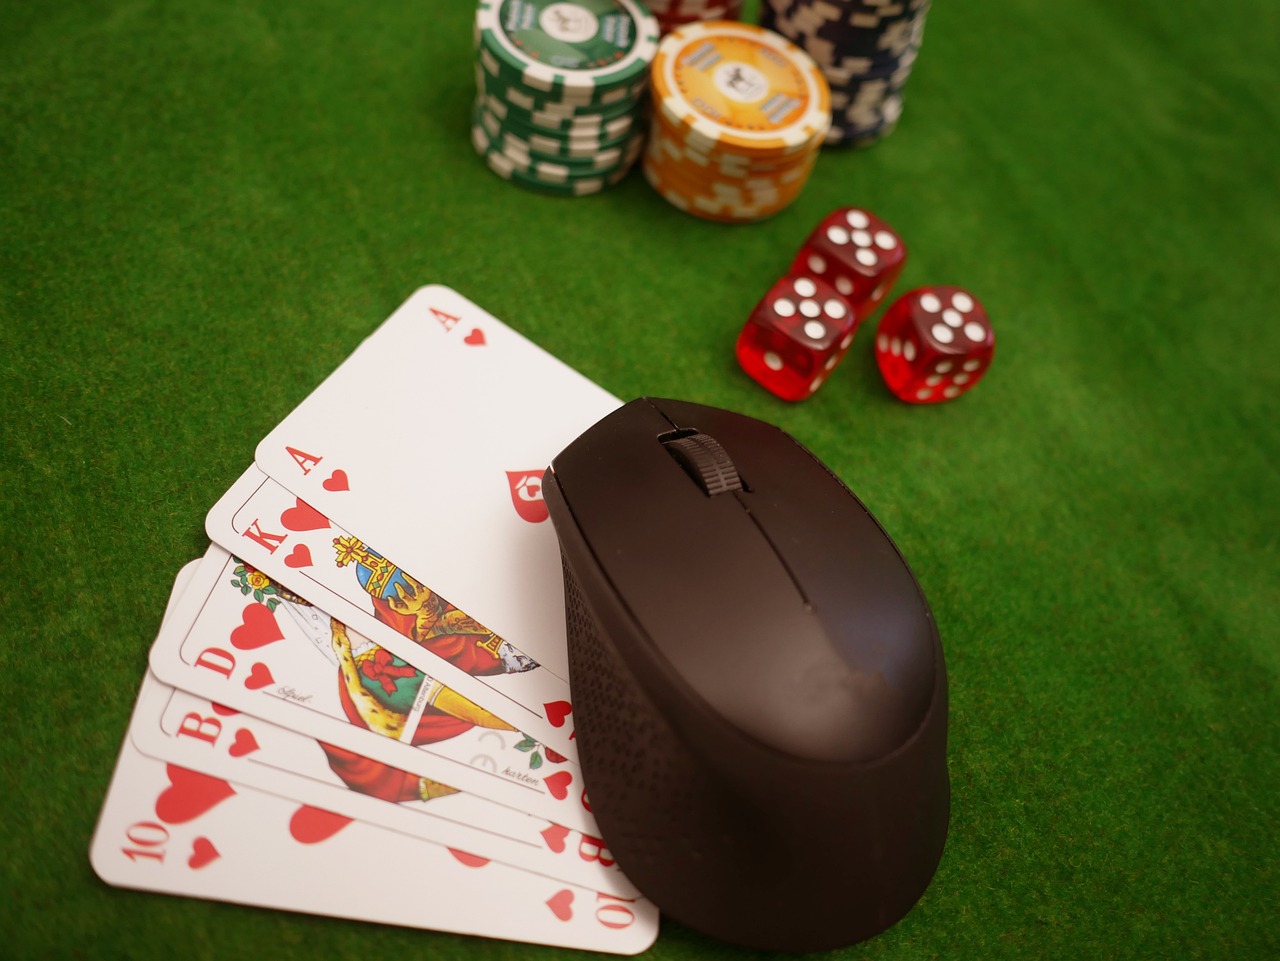 Een pokertafel met daarop een aantal pokerschijfjes, dobbelstenen, kaarten en een computermuis